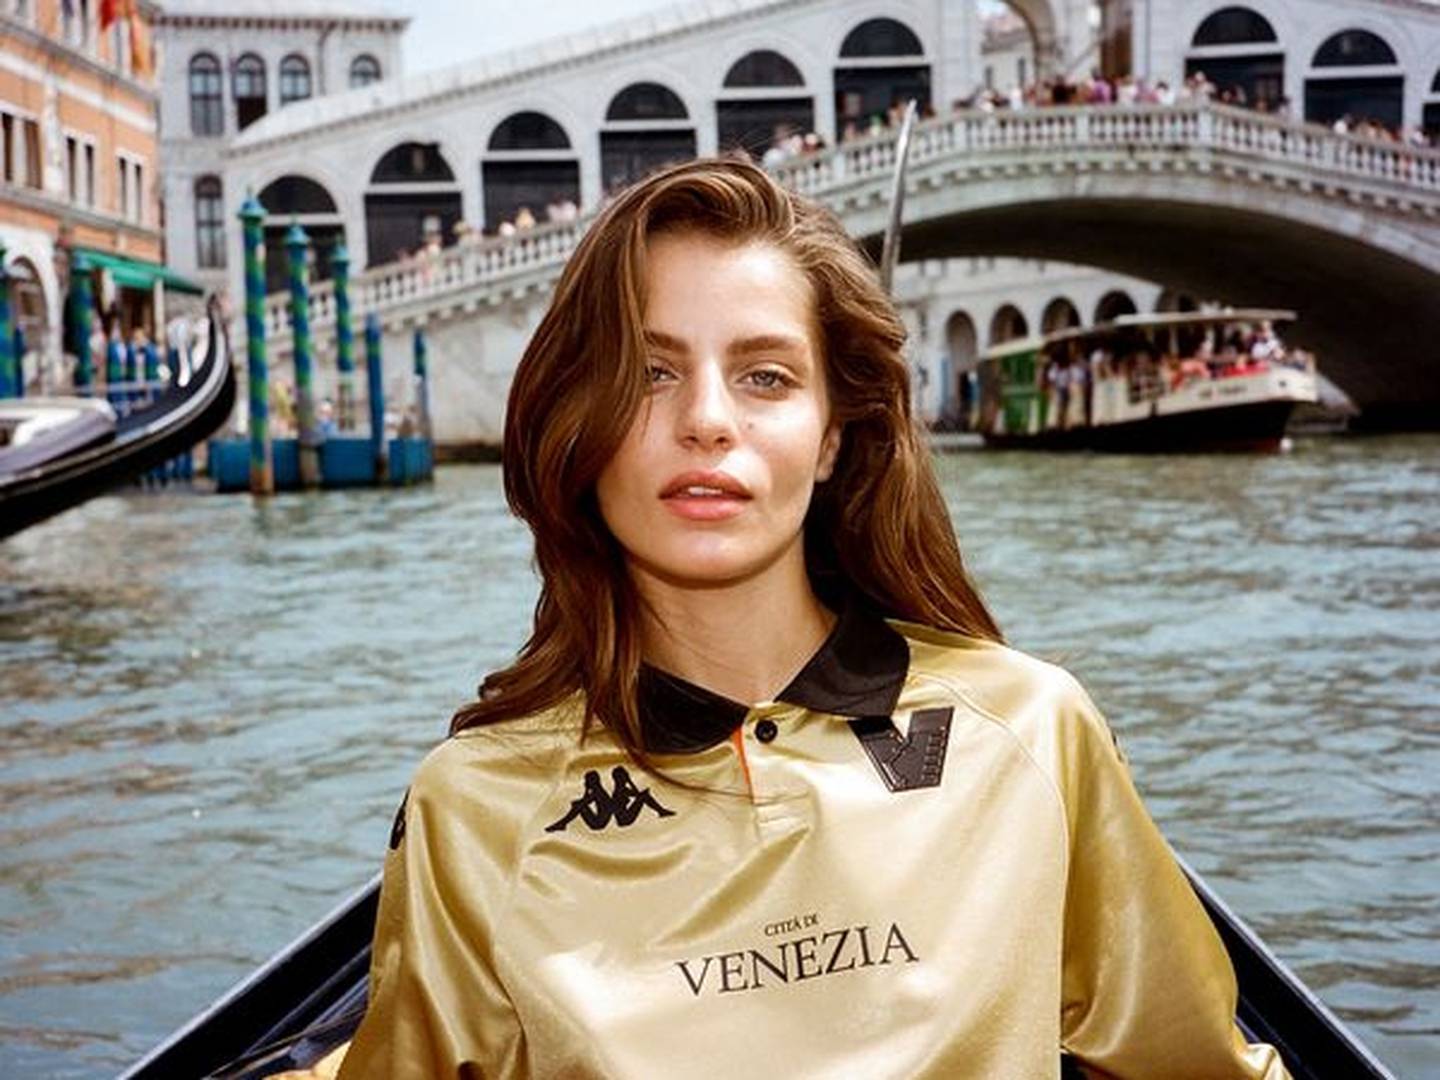 Los anuncios del Venezia buscan capitalizar el eterno glamour de la ciudad. Fotógrafo: Chris Kontos